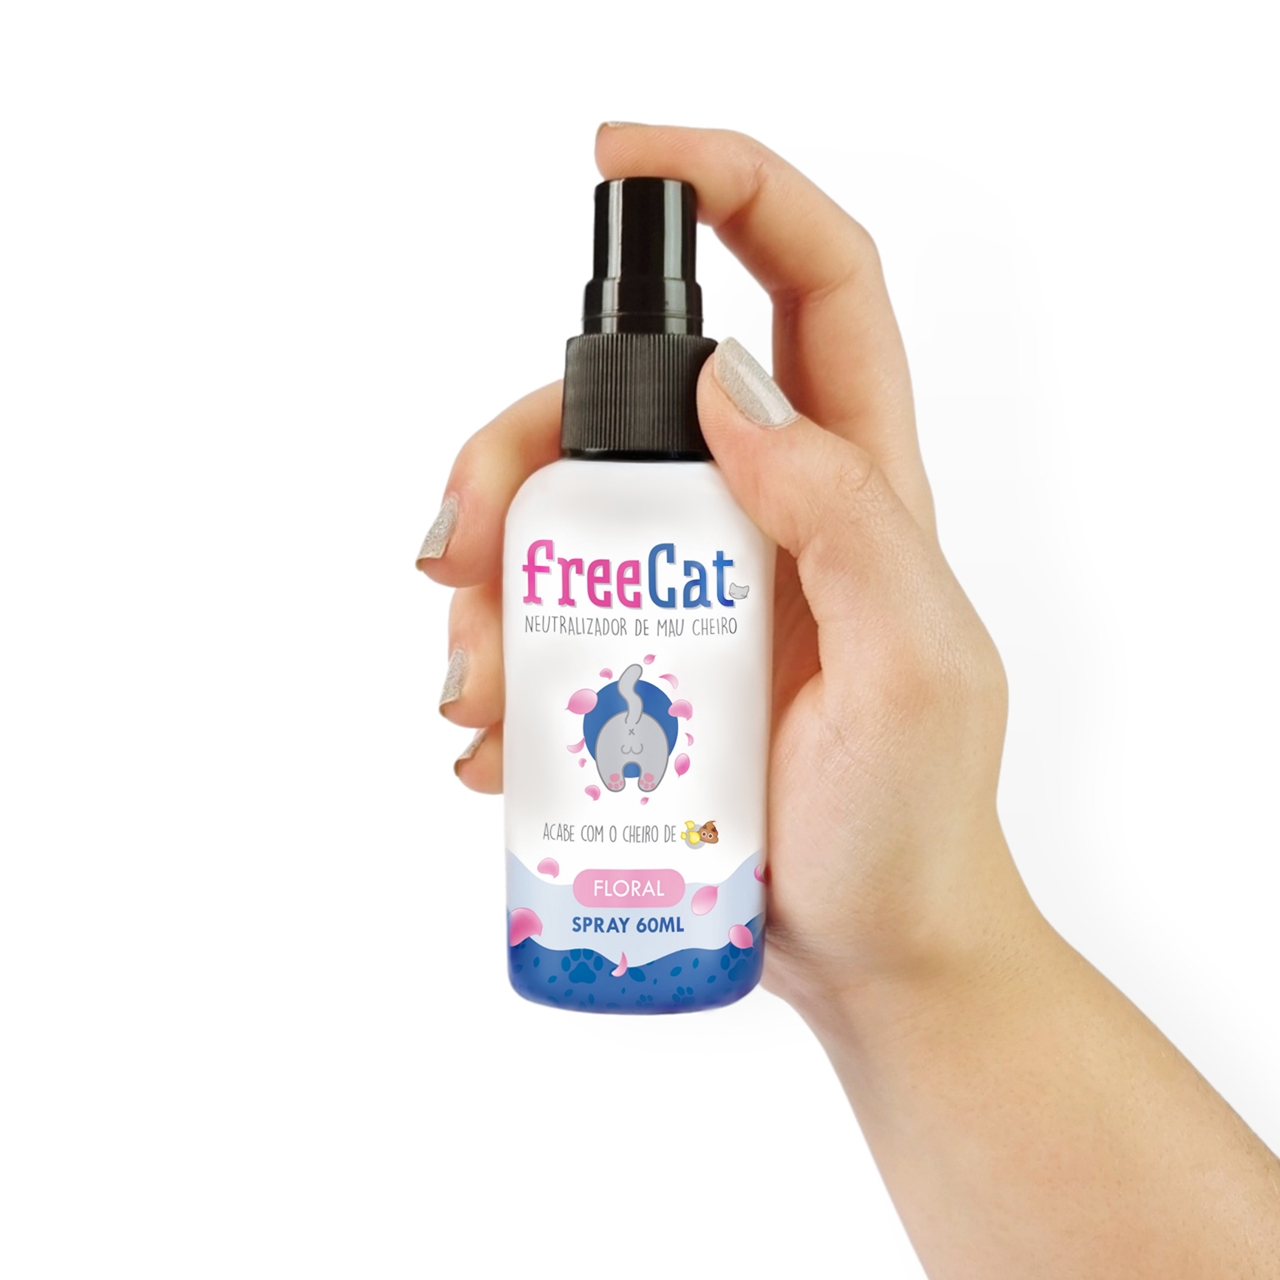 FreeCat Neutralizador de Mau Cheiro Spray FLORAL CatMyPet